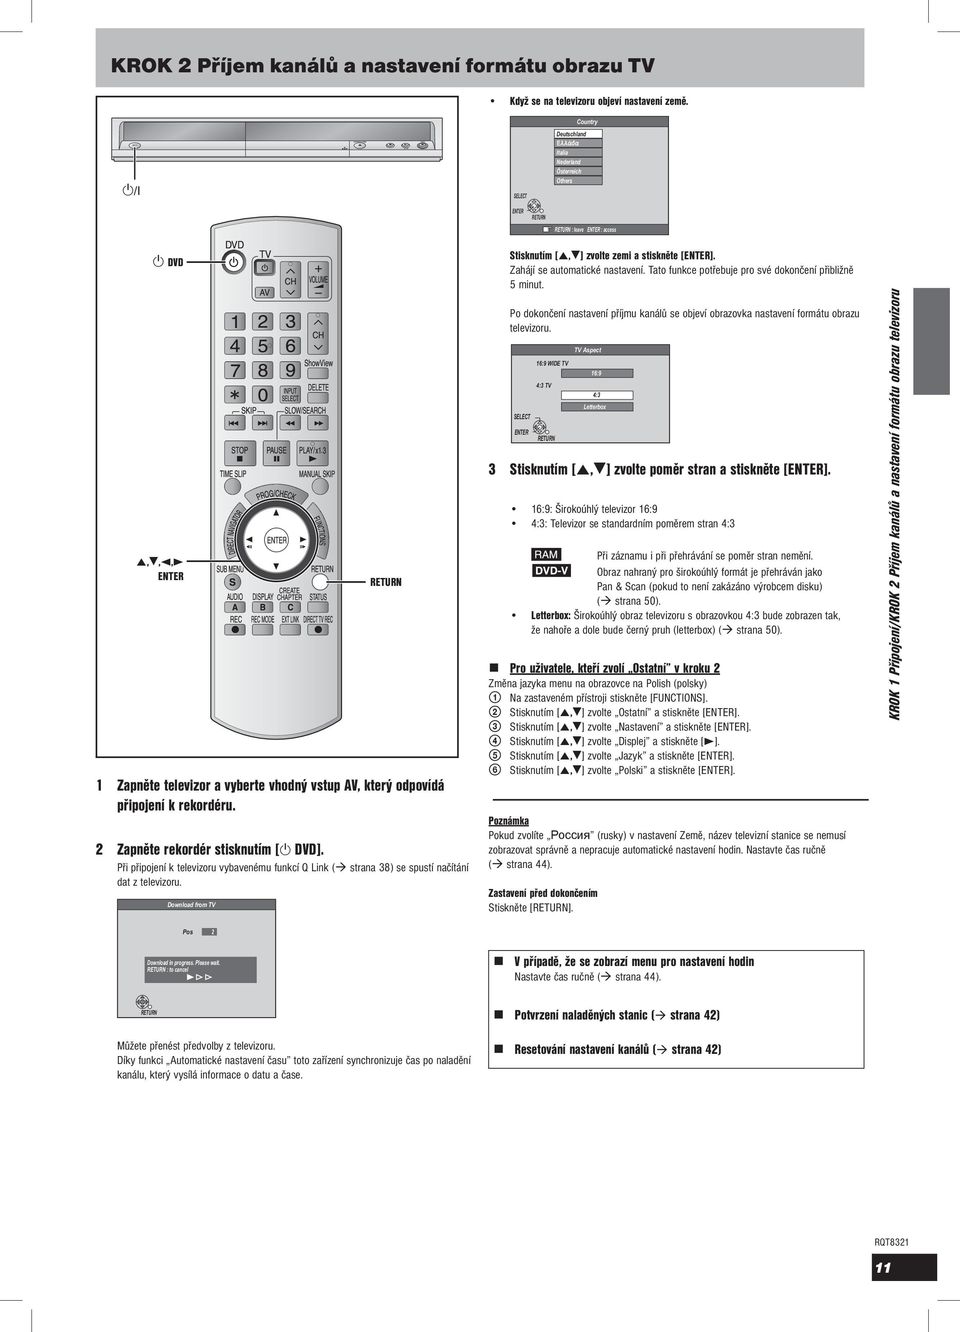 k rekordéru. 2 Zapněte rekordér stisknutím [ DVD]. Při připojení k televizoru vybavenému funkcí Q Link ( strana 38) se spustí načítání dat z televizoru.